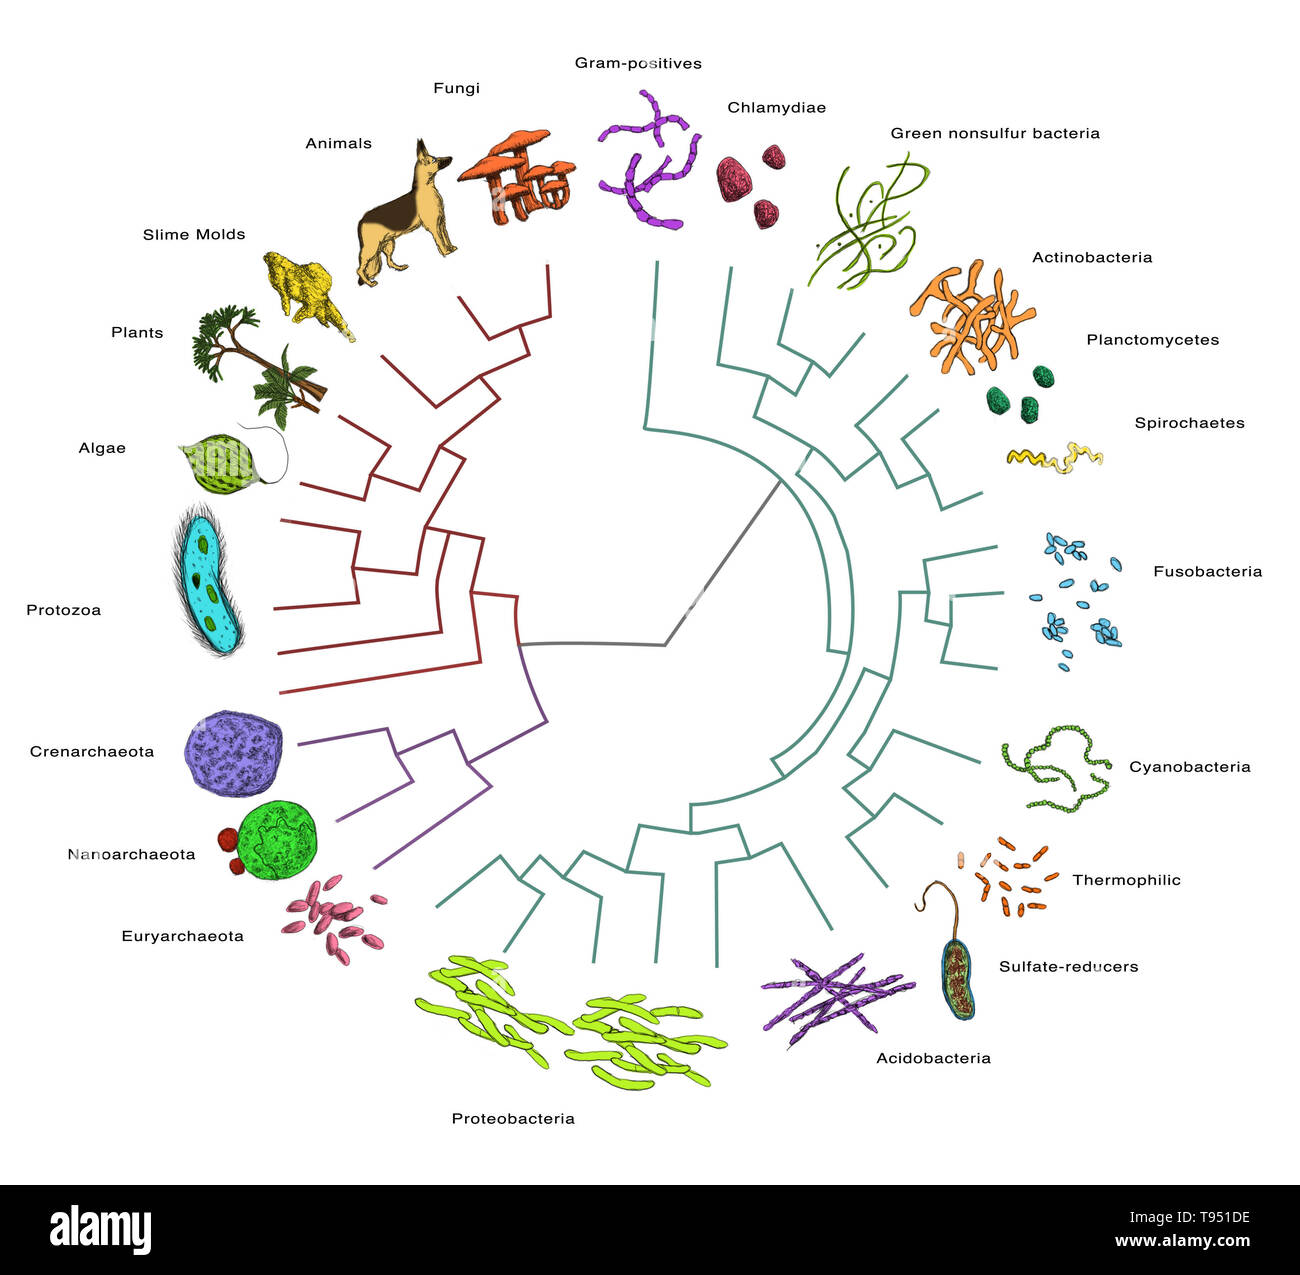 Filogenético o evolutivo), árbol que muestra las relaciones evolutivas  entre varias especies, principalmente bacterias Fotografía de stock - Alamy